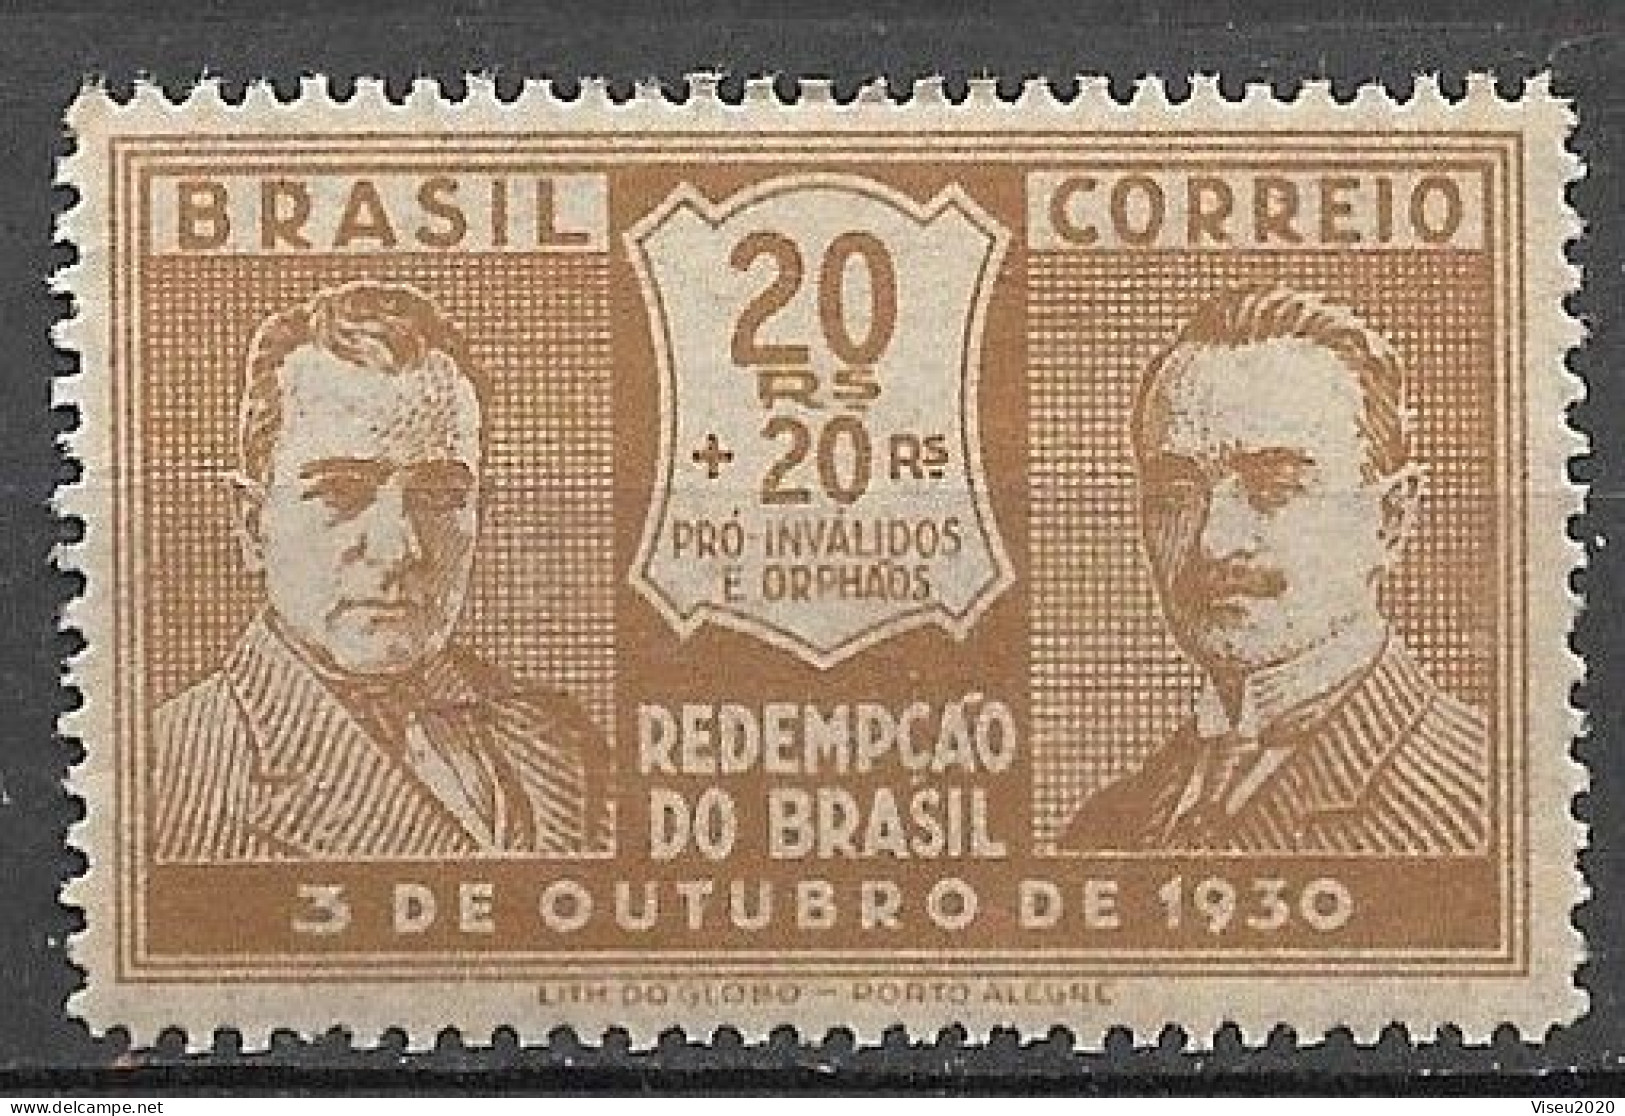 Brasil Brazil 1931 - Revolução De 03 De Outubro De 1930 - RHM C28 - Ongebruikt